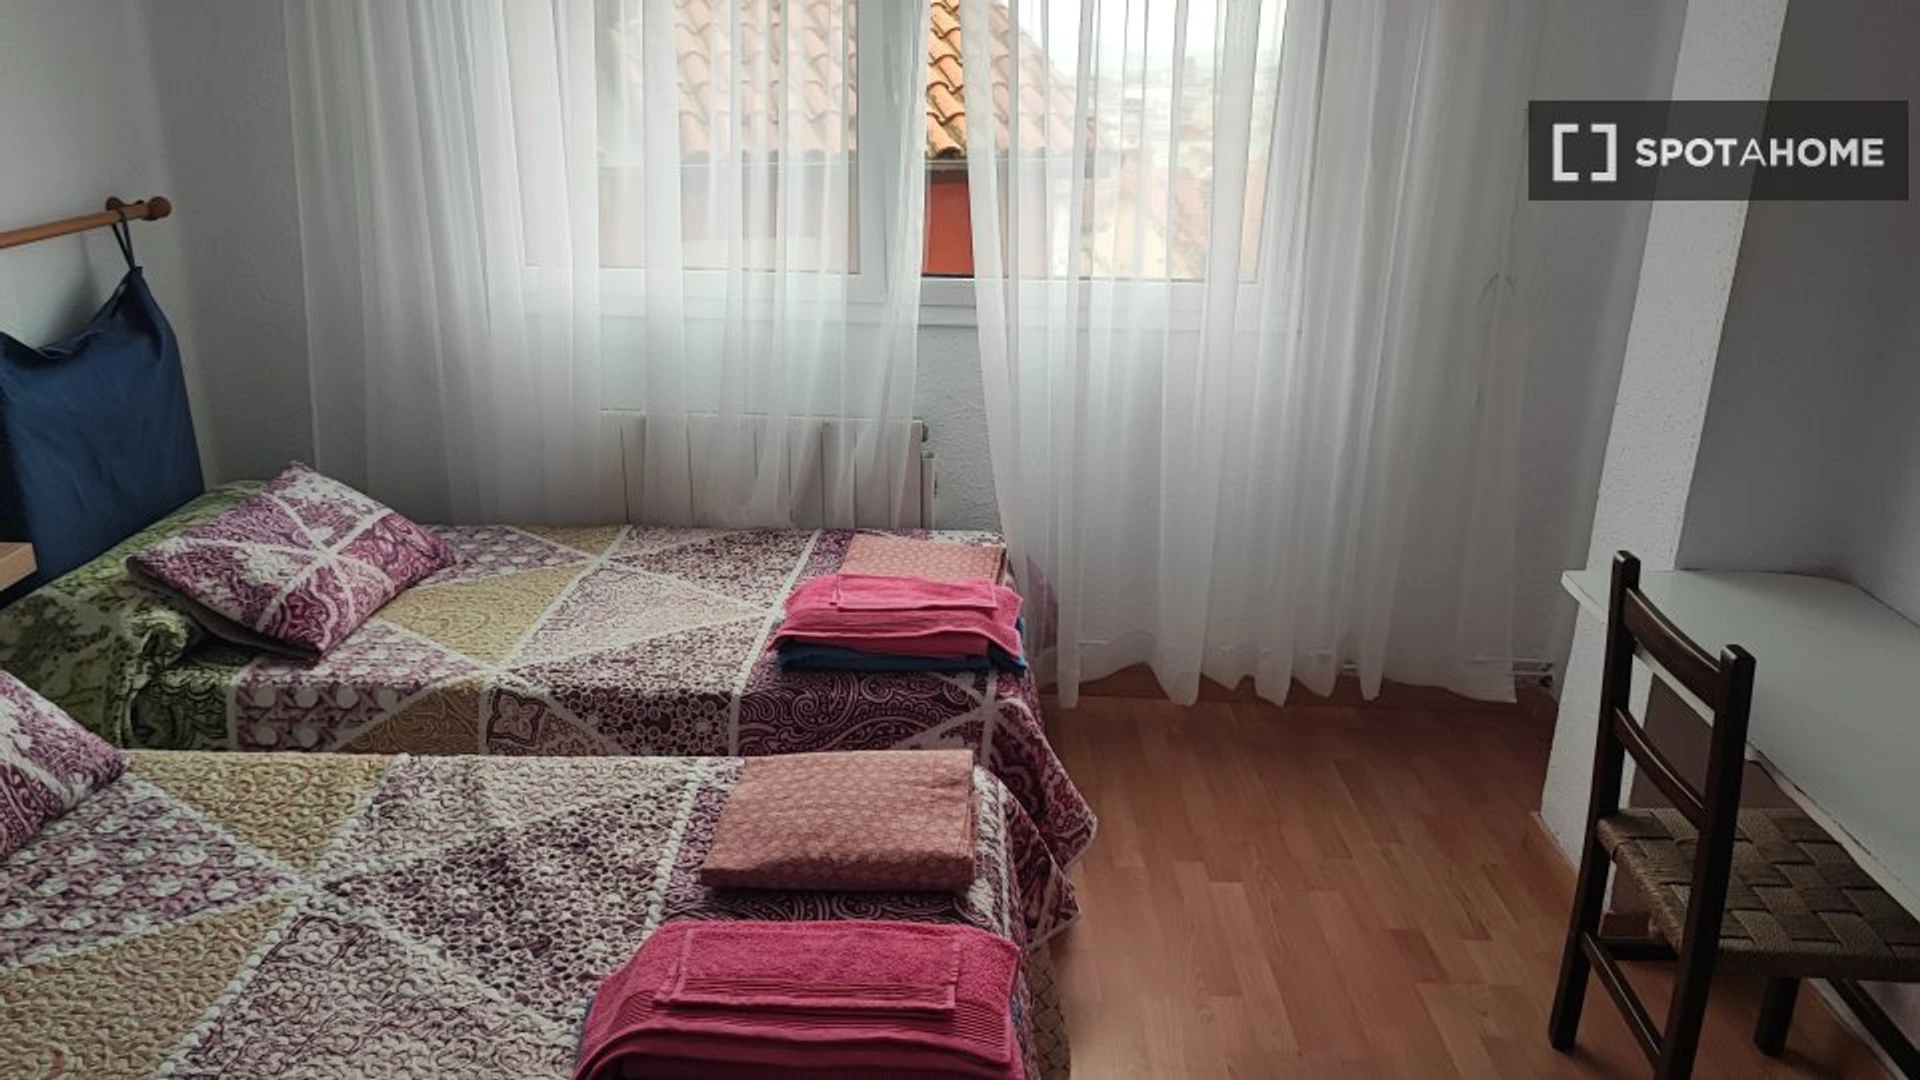 Alquiler de habitaciones por meses en Santander